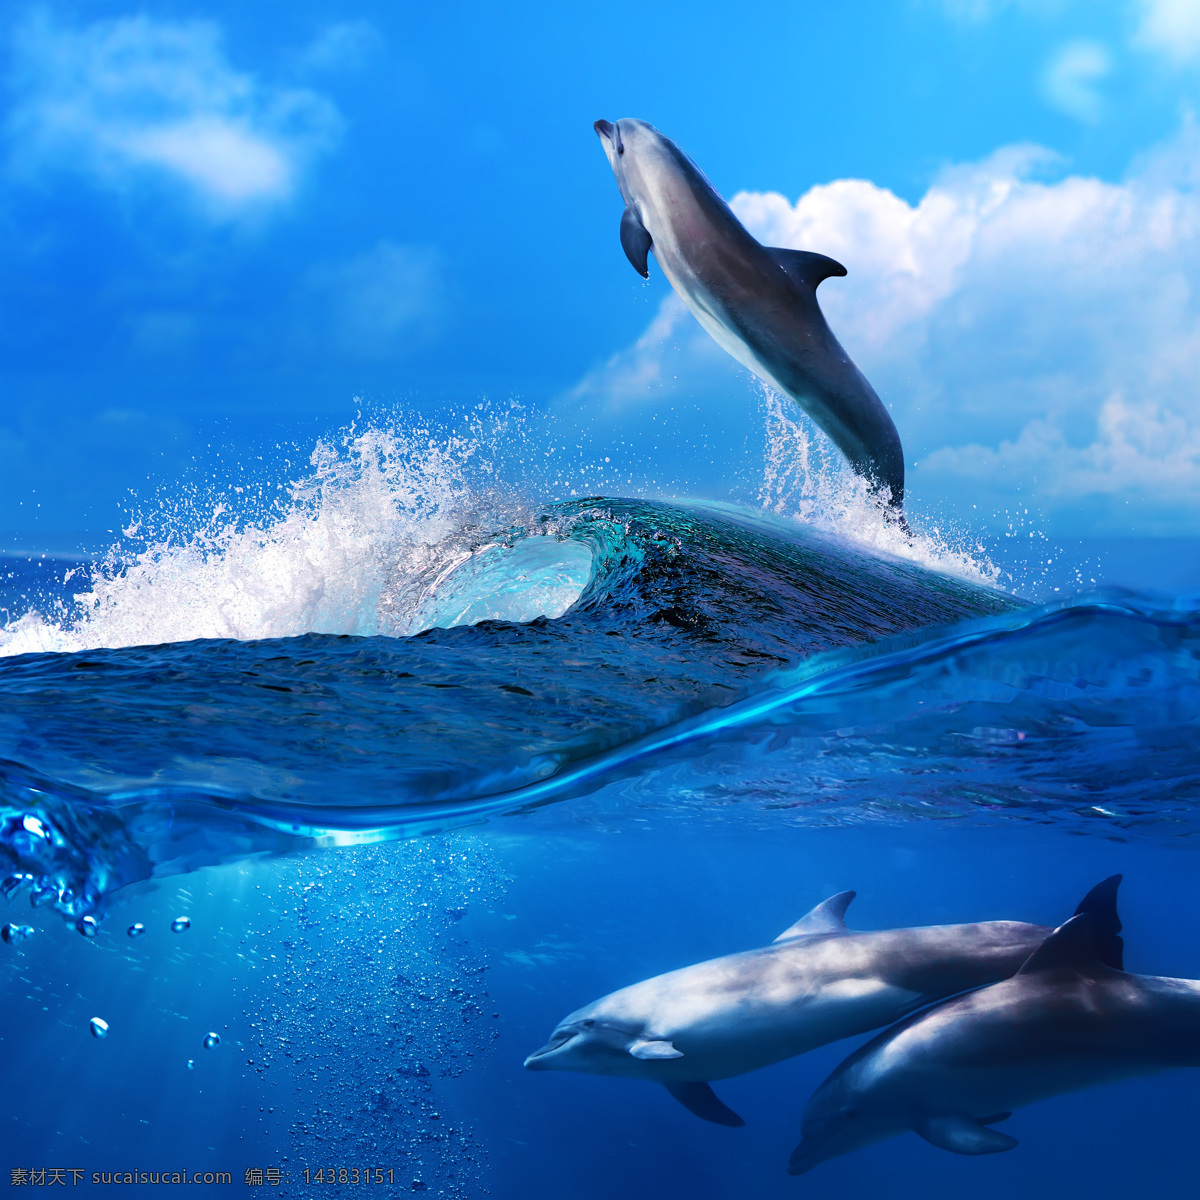 海浪与海豚 海浪 海豚 鱼 鱼类动物 海底生物 水中生物 海洋生物 海洋动物 生物世界 蓝色